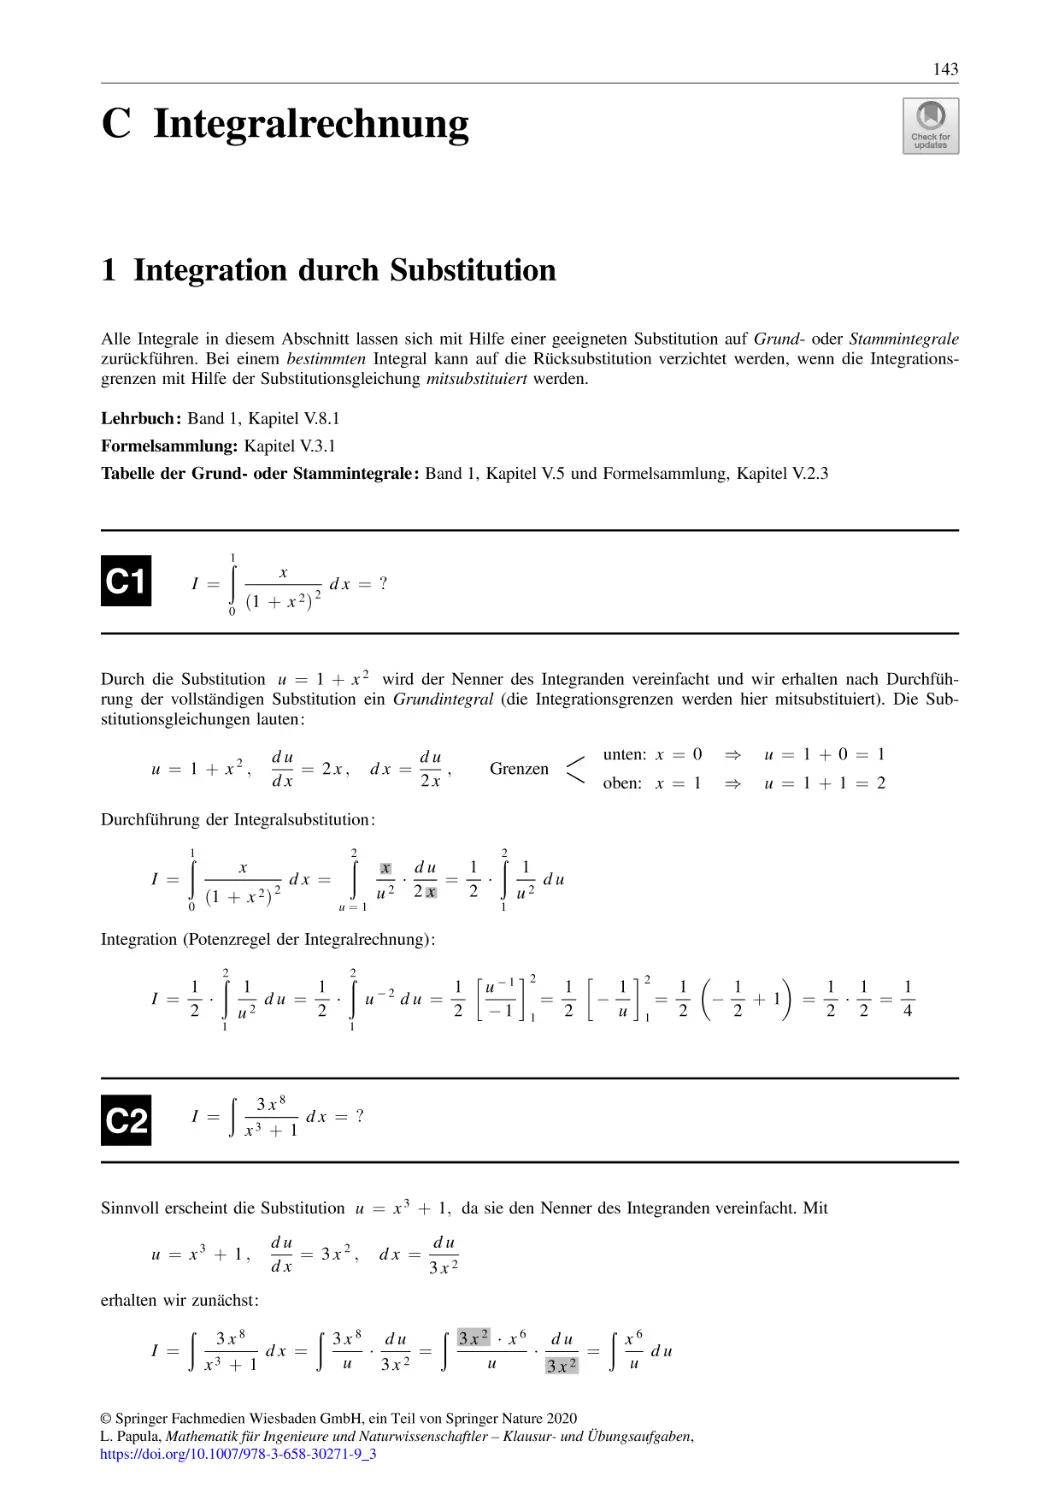 C Integralrechnung
1 Integration durch Substitution